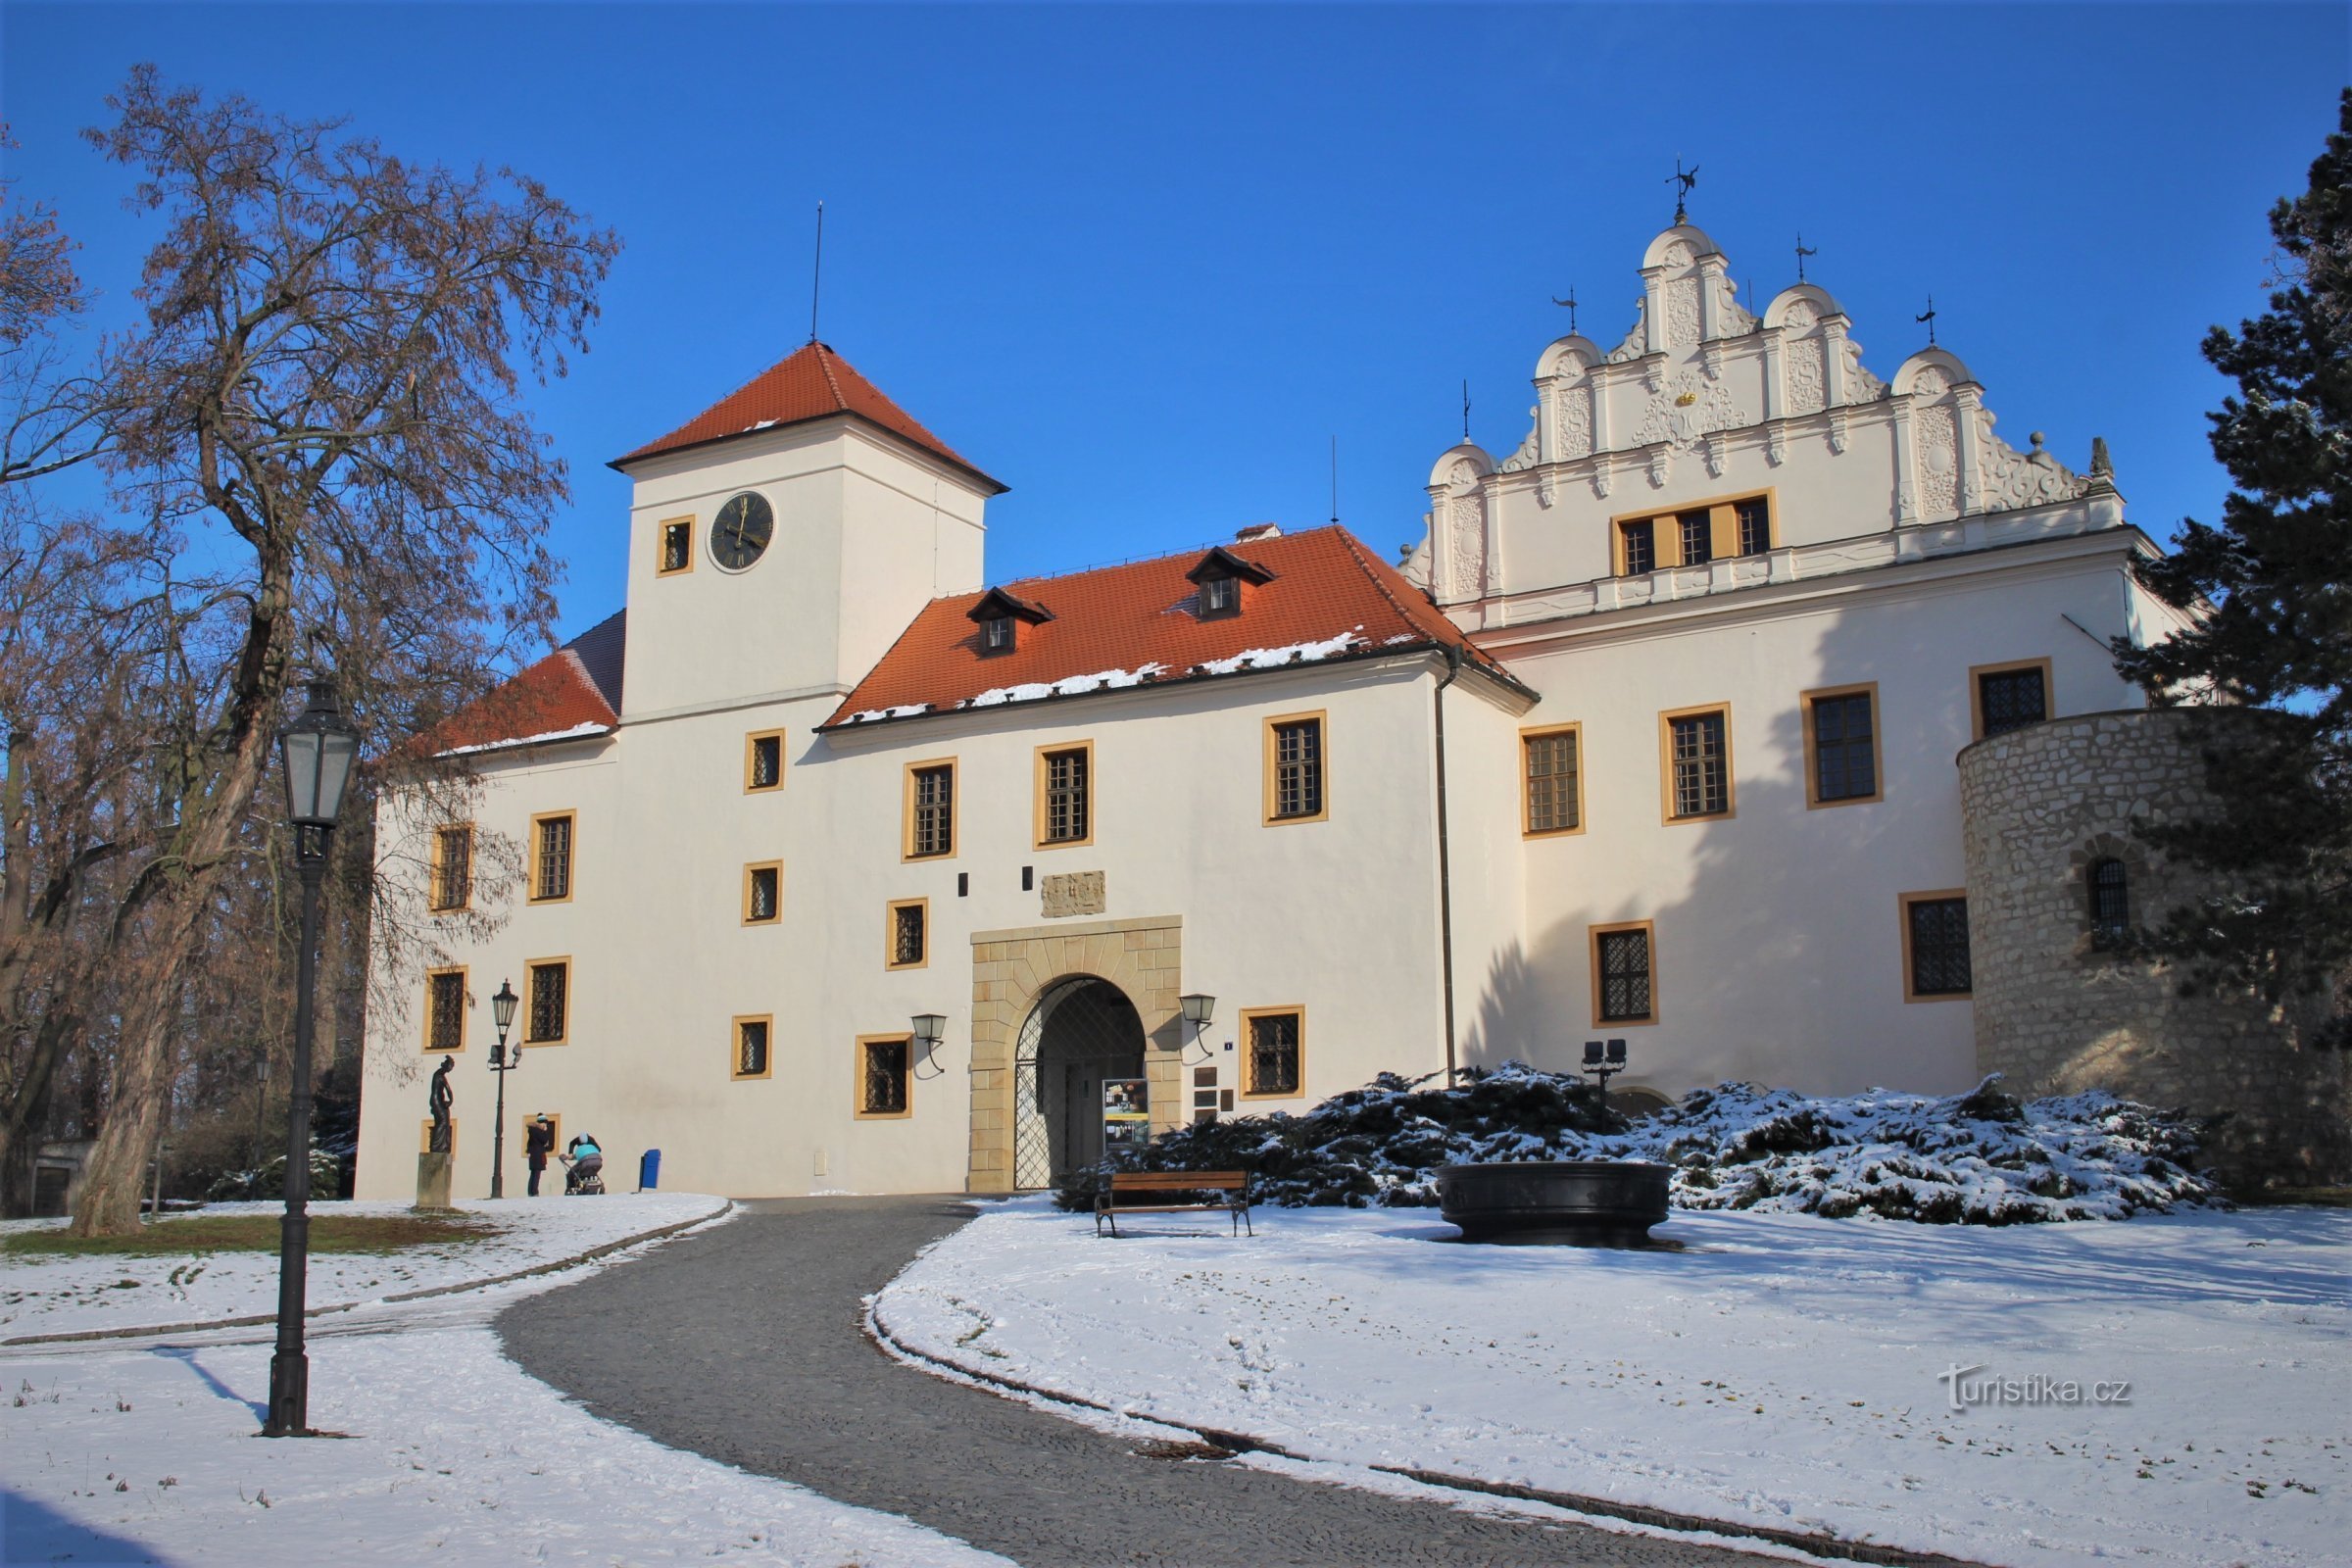 The facade of Blanen Castle